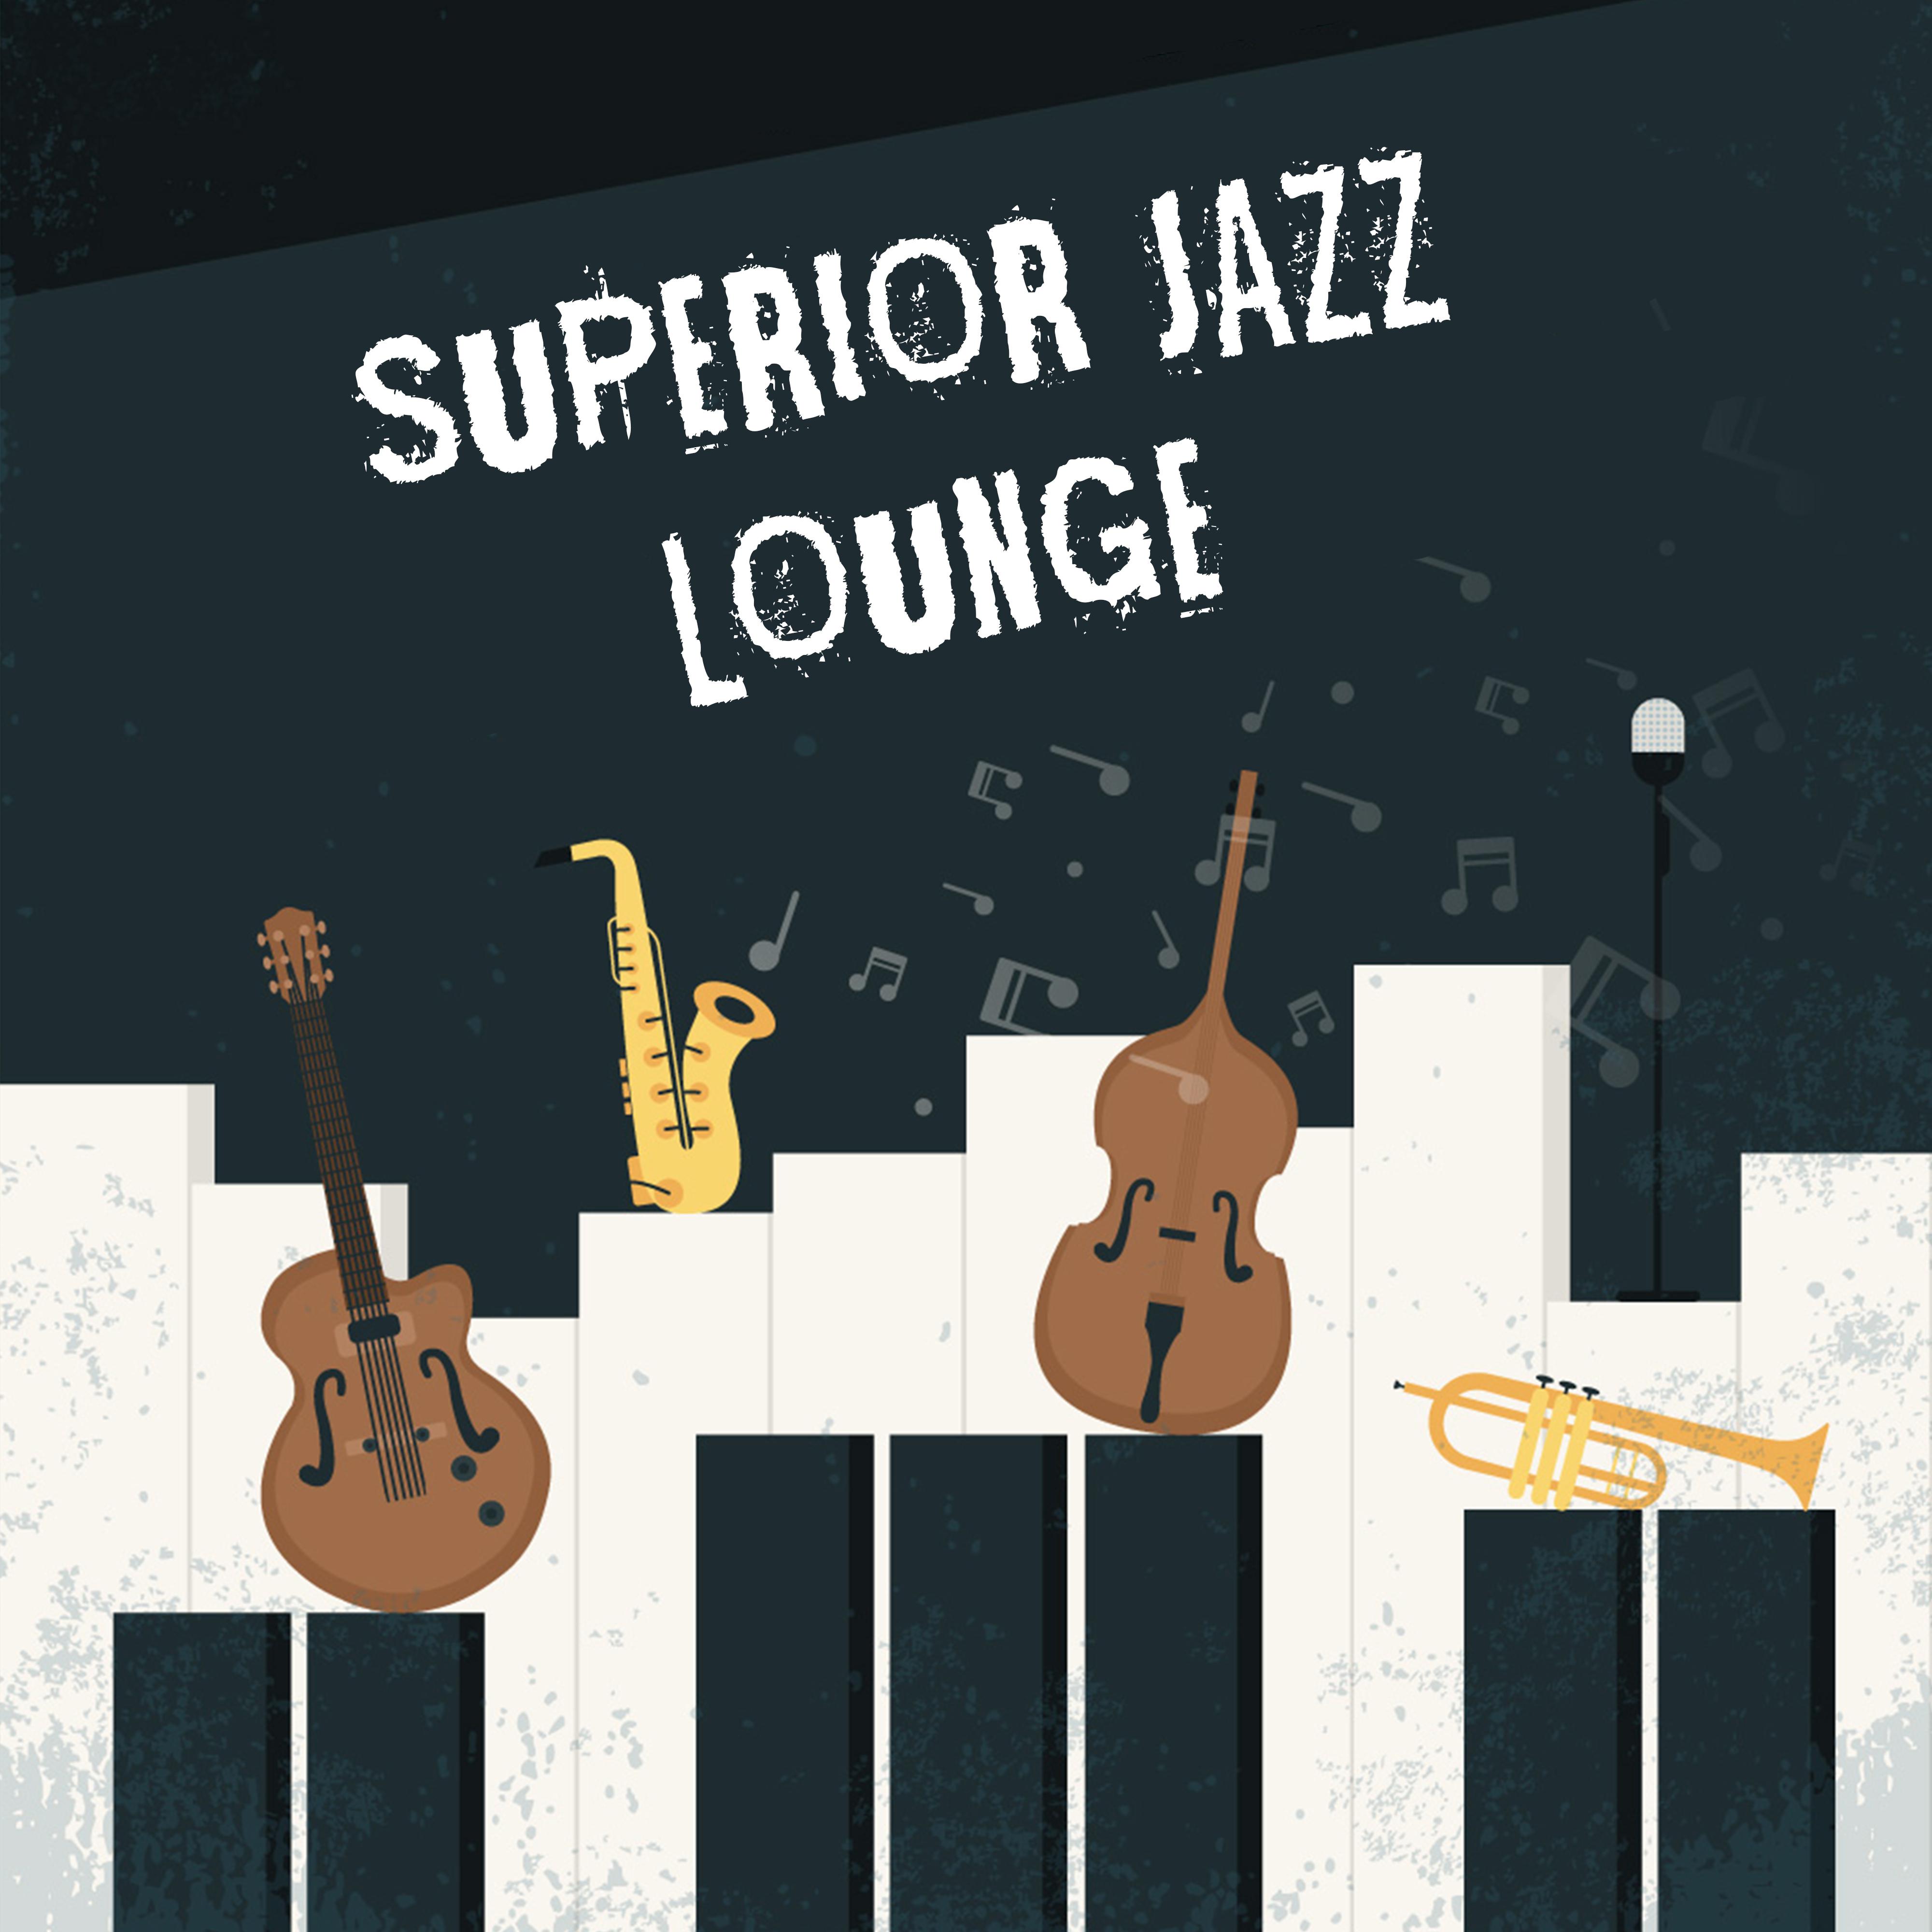 Superior Jazz Lounge